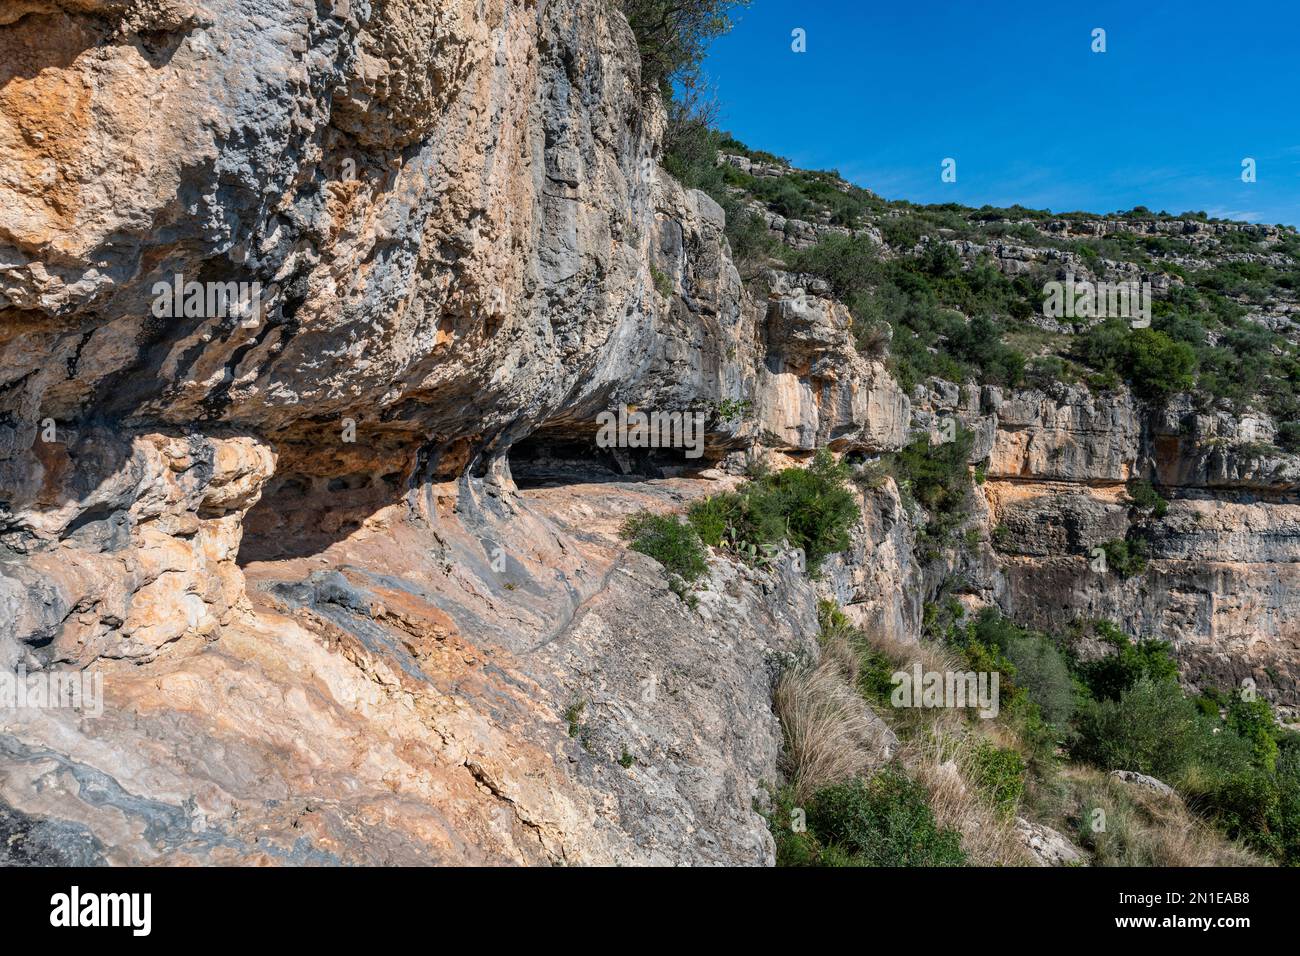 Voladizo, Arte rupestre de la cuenca mediterránea ibérica, Patrimonio de la Humanidad de la UNESCO, Ulldecona, Cataluña, España, Europa Foto de stock